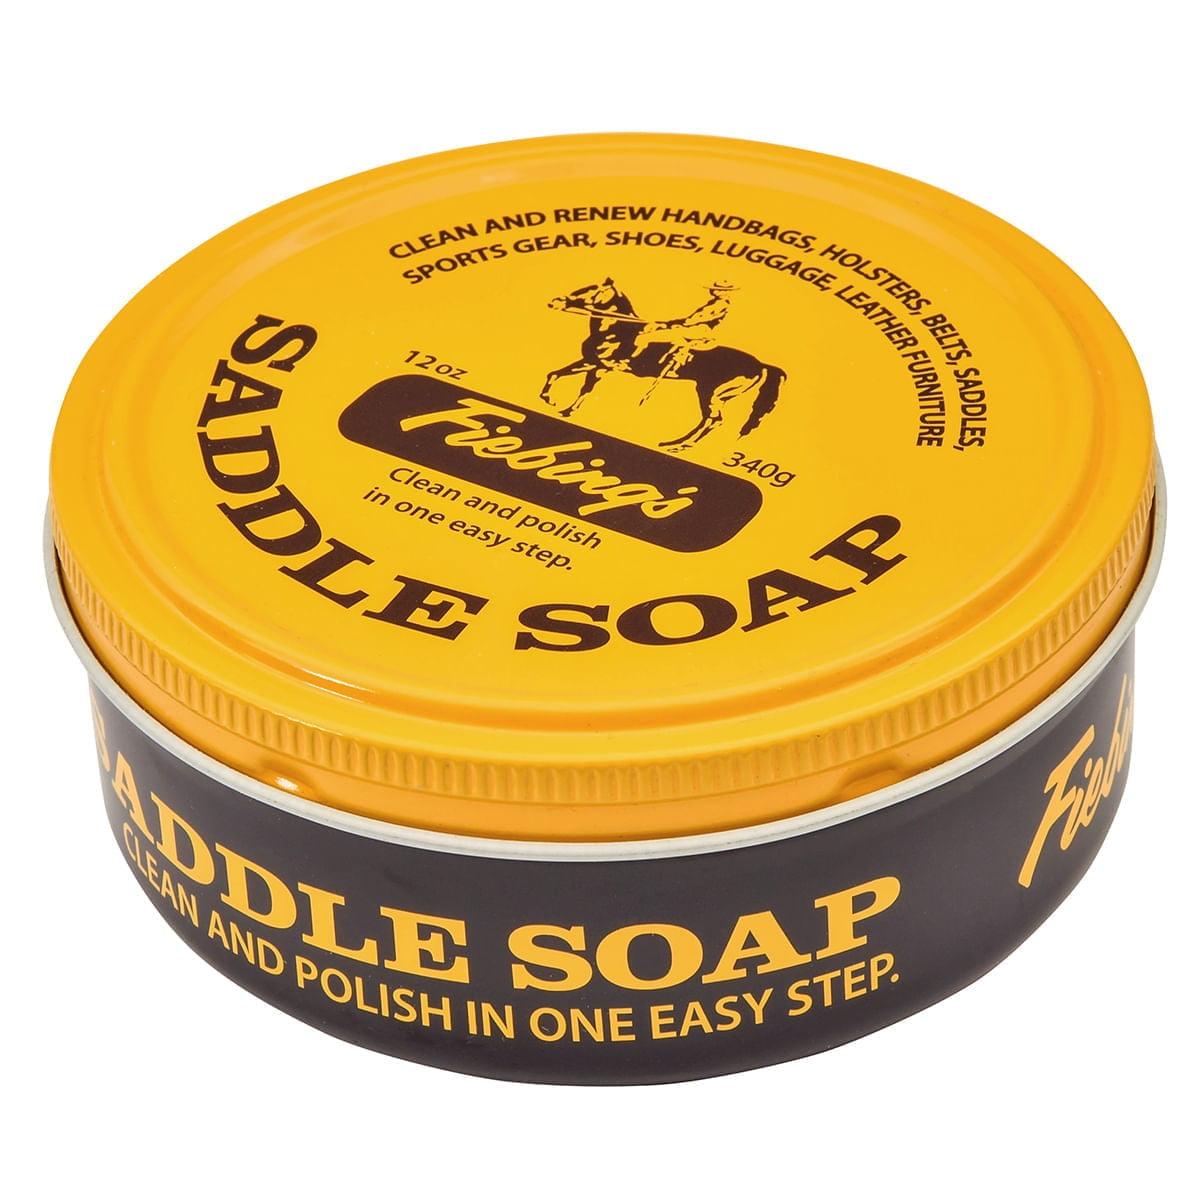 Leather Care - Fiebing's - Saddle Soap – mzz T rzz Shoemaking